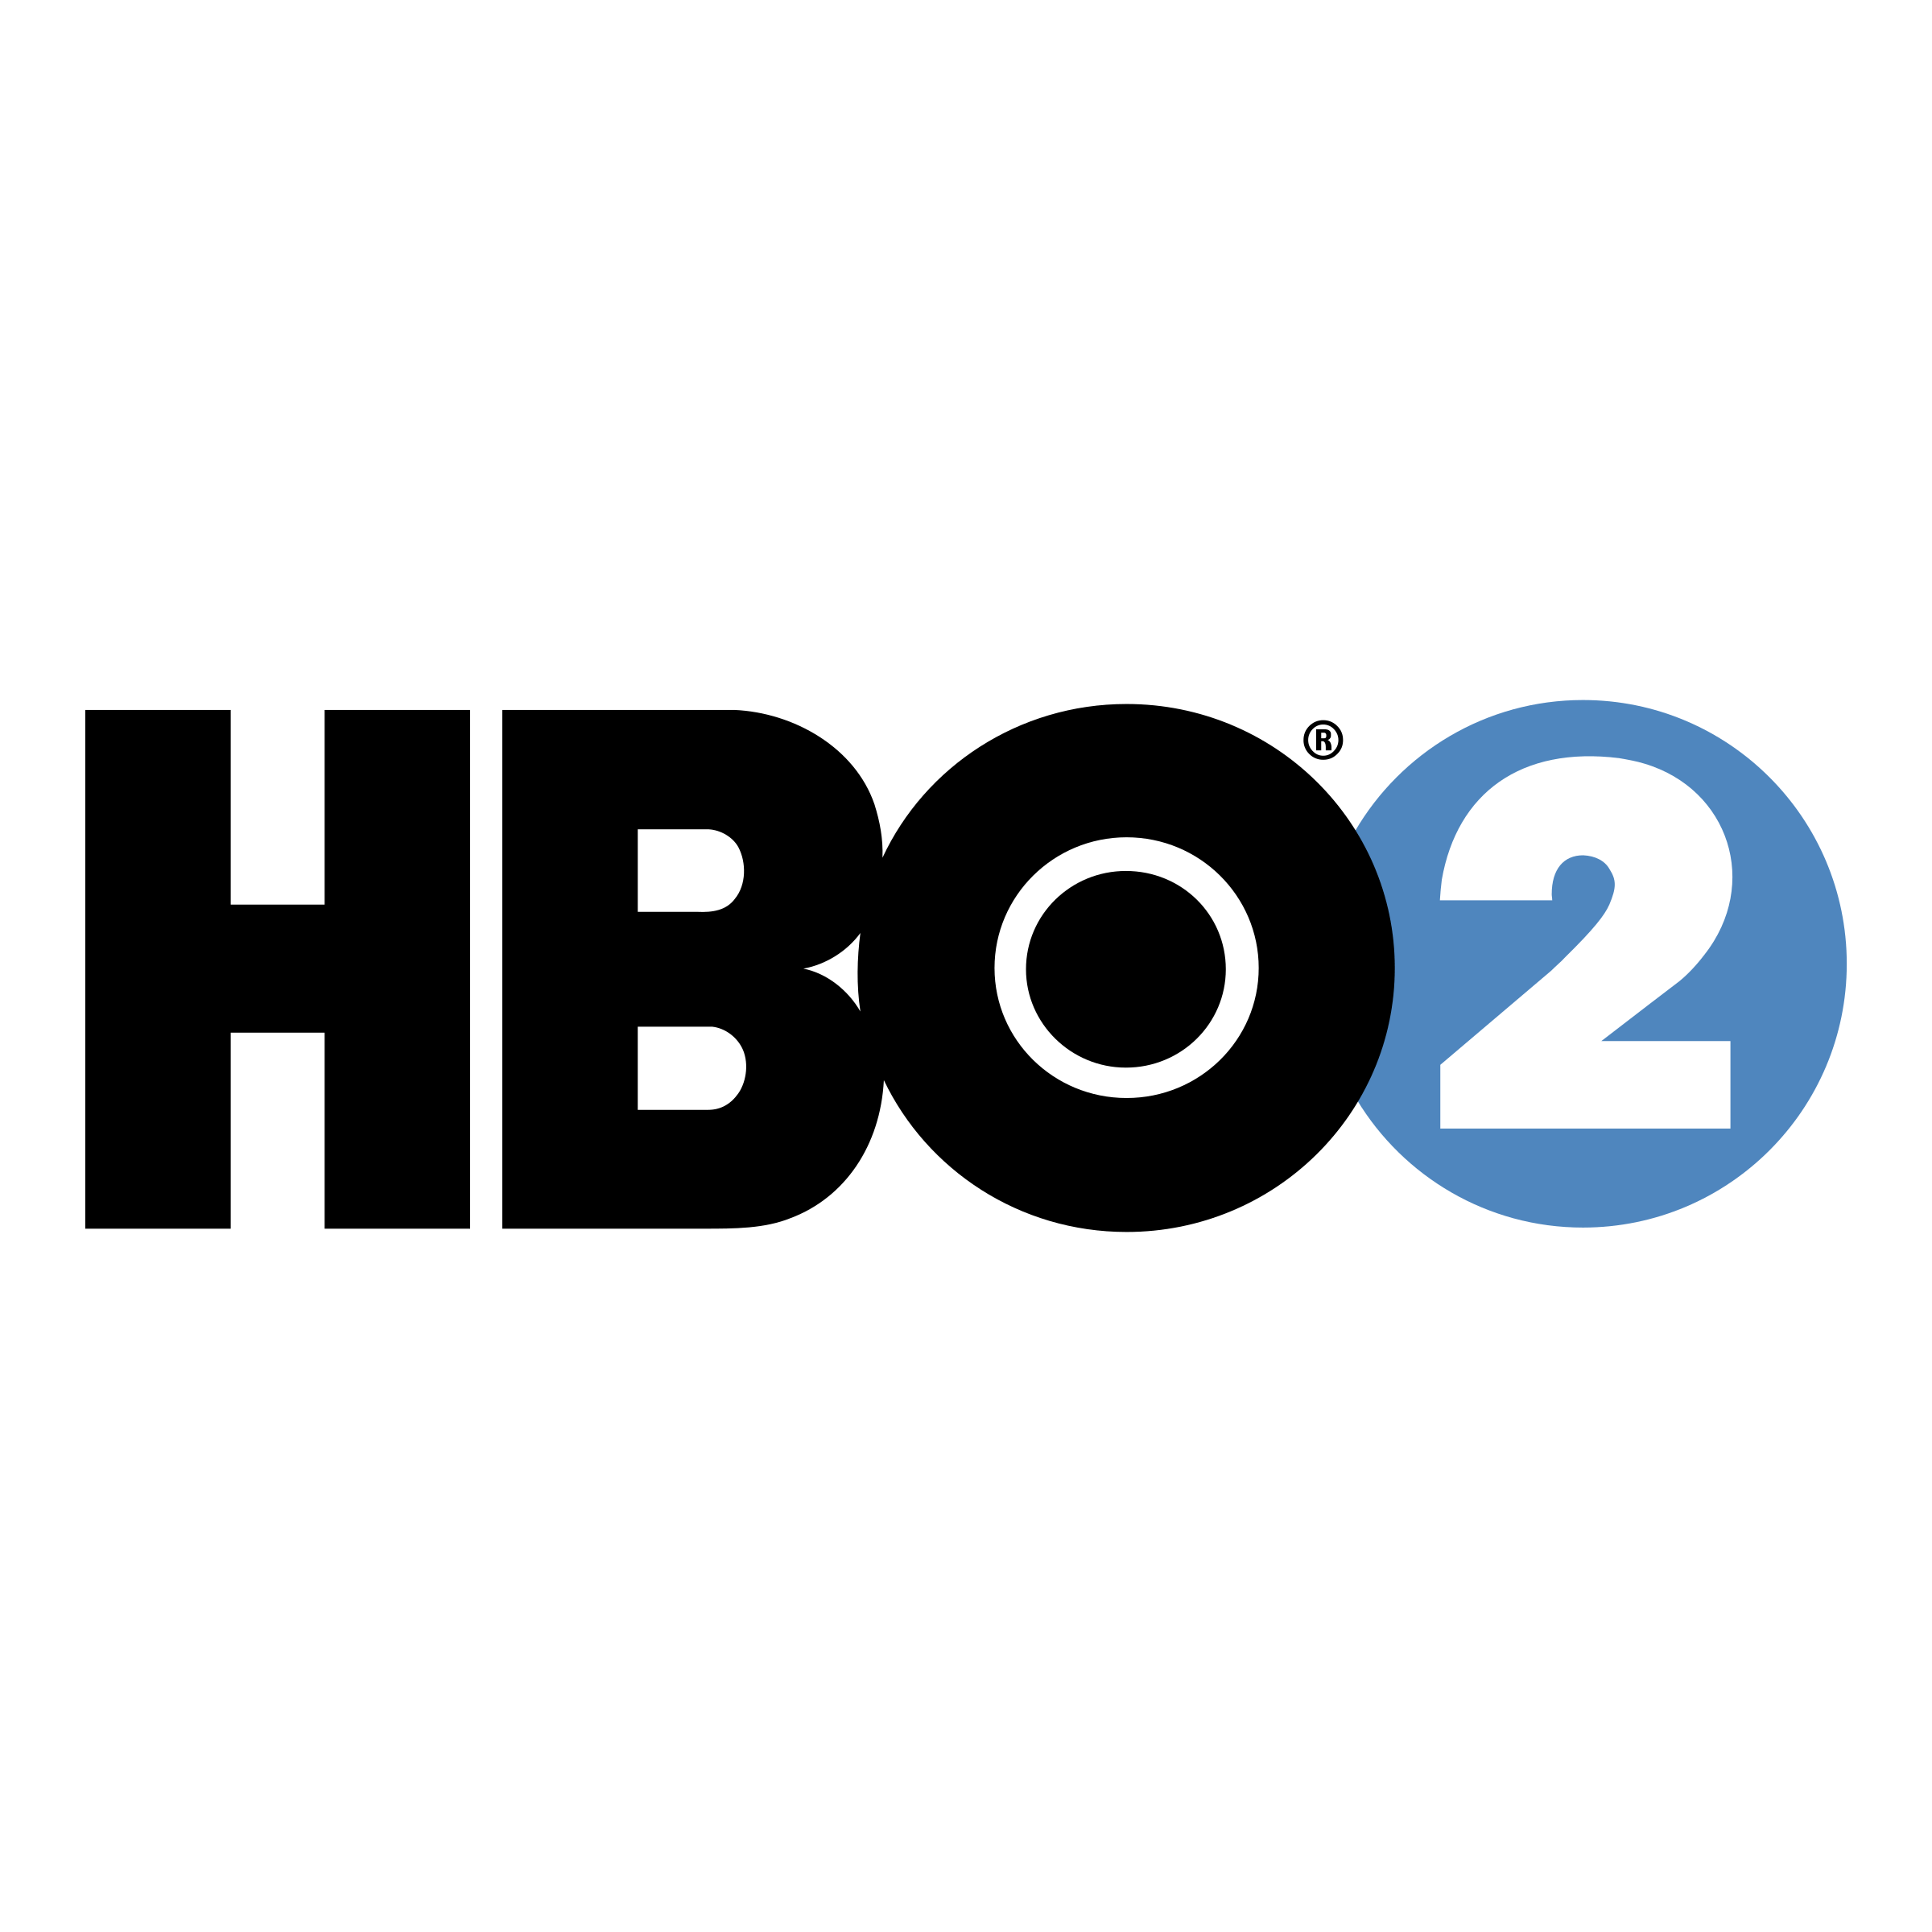 HBO2 Logo - HBO 2 Logo PNG Transparent & SVG Vector - Freebie Supply